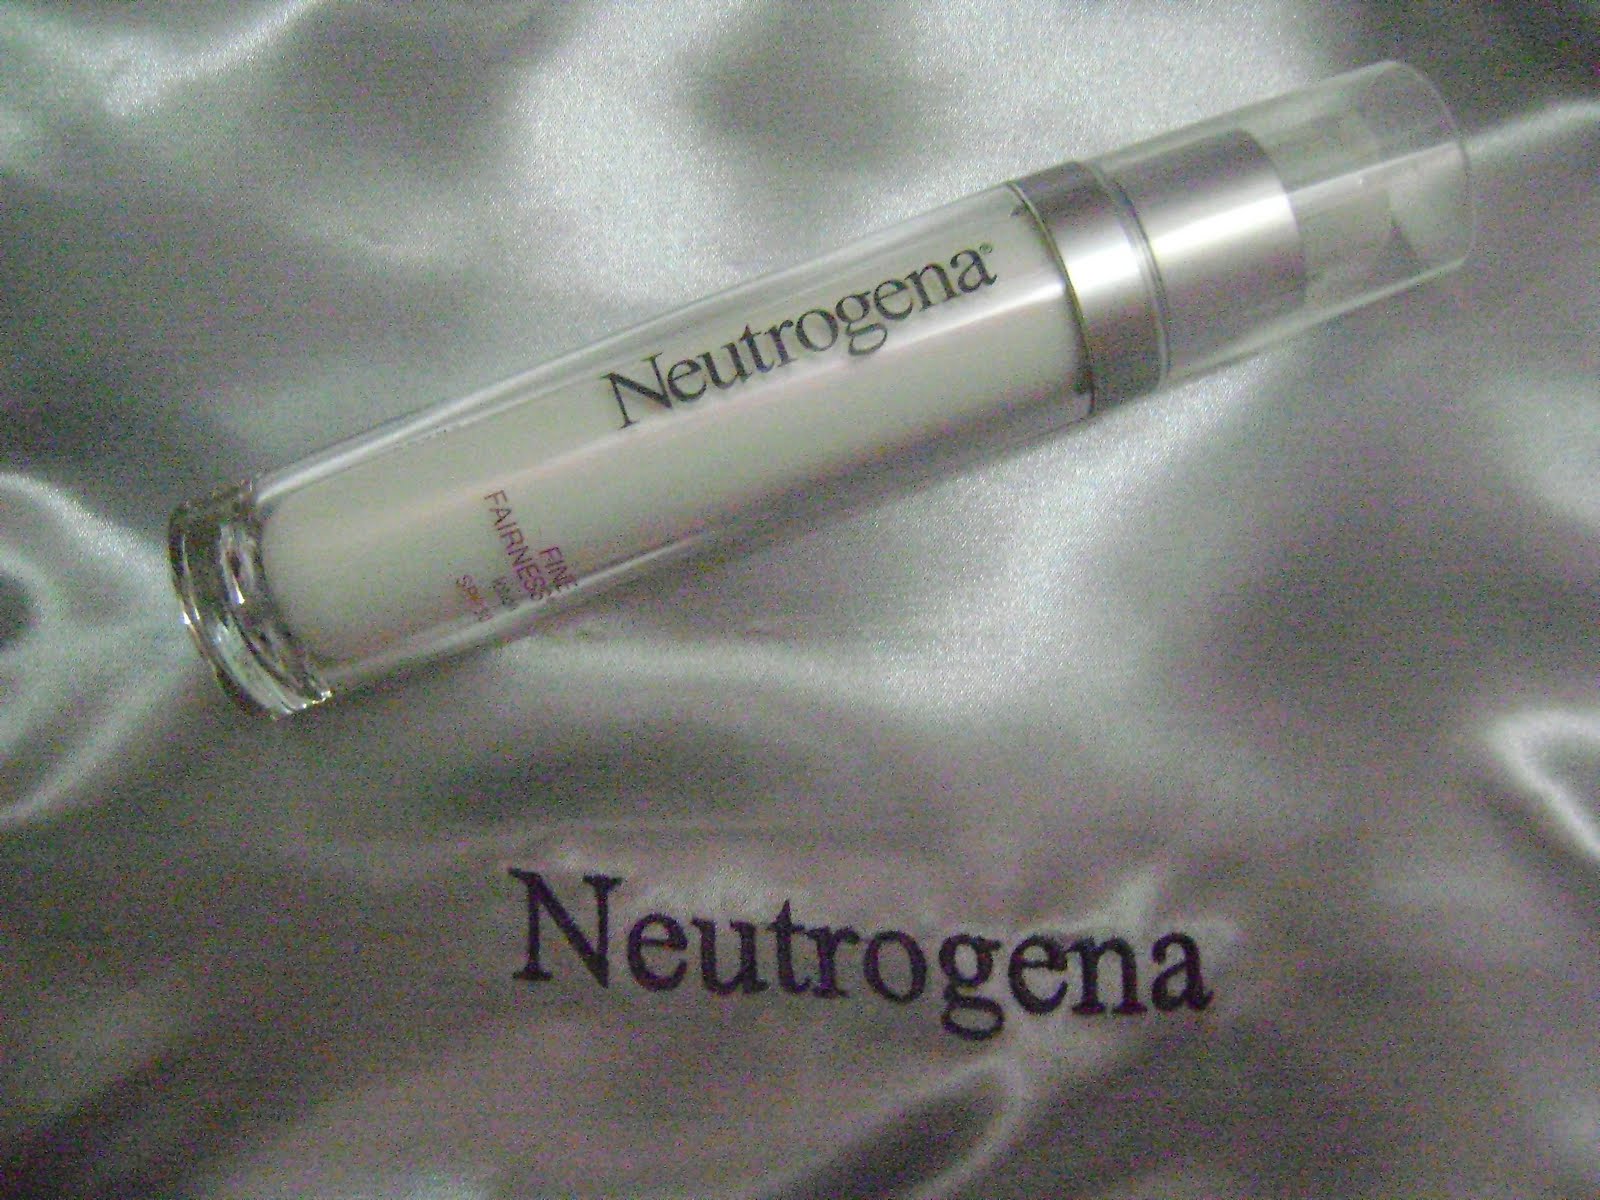 lotion from Neutrogena